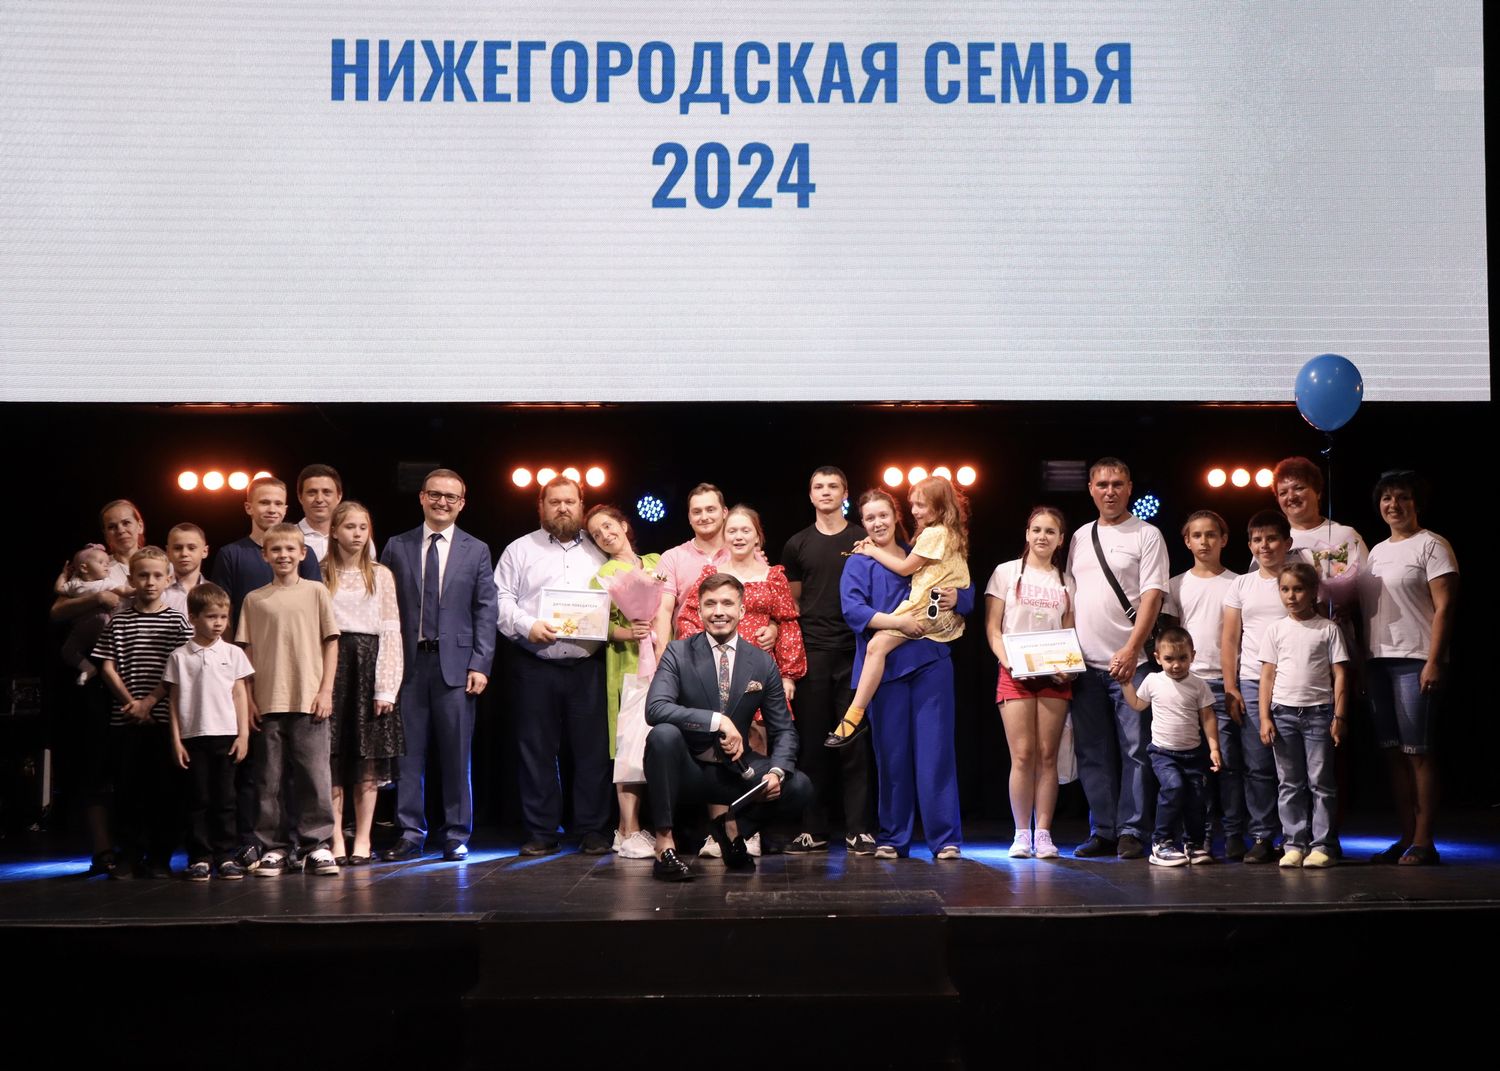 В столице Приволжья подвели итоги ежегодного областного конкурса «Нижегородская семья»